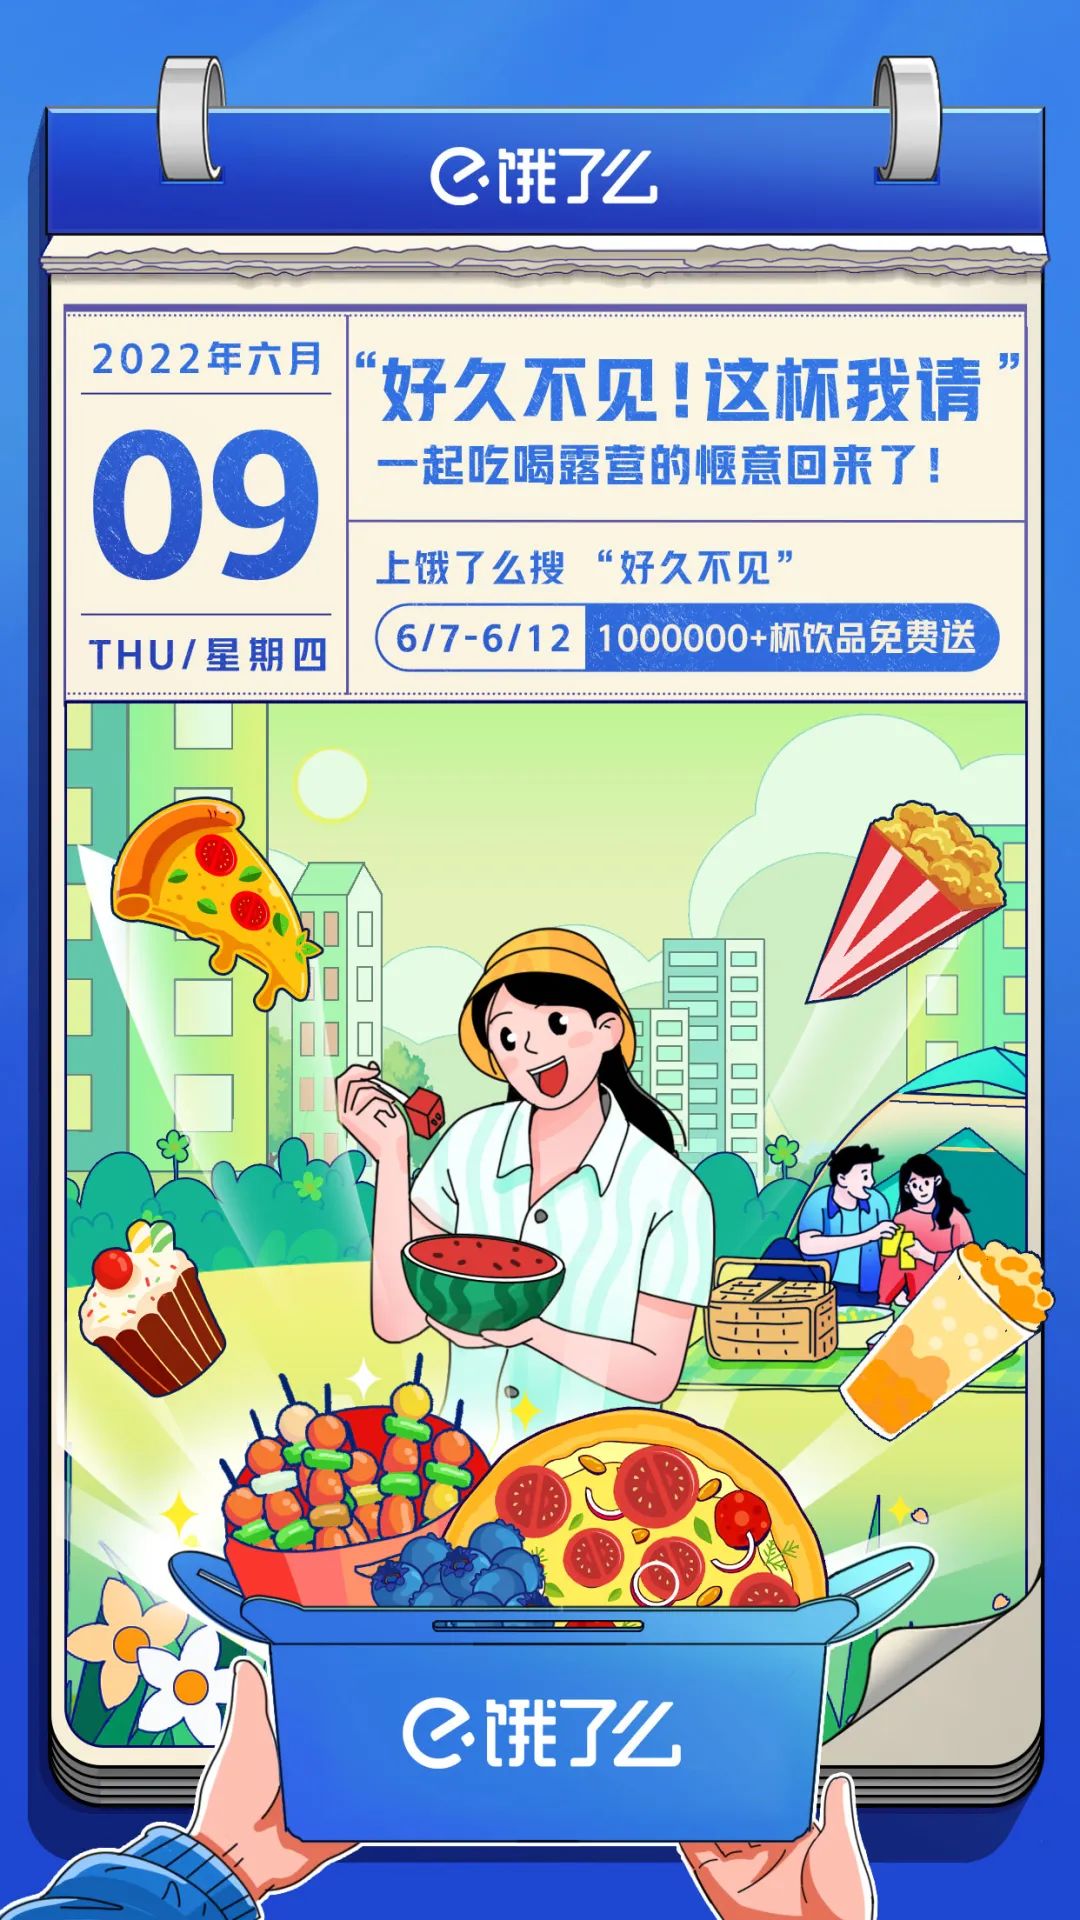 向上海用户喊话“好久不见”，饿了么有心了